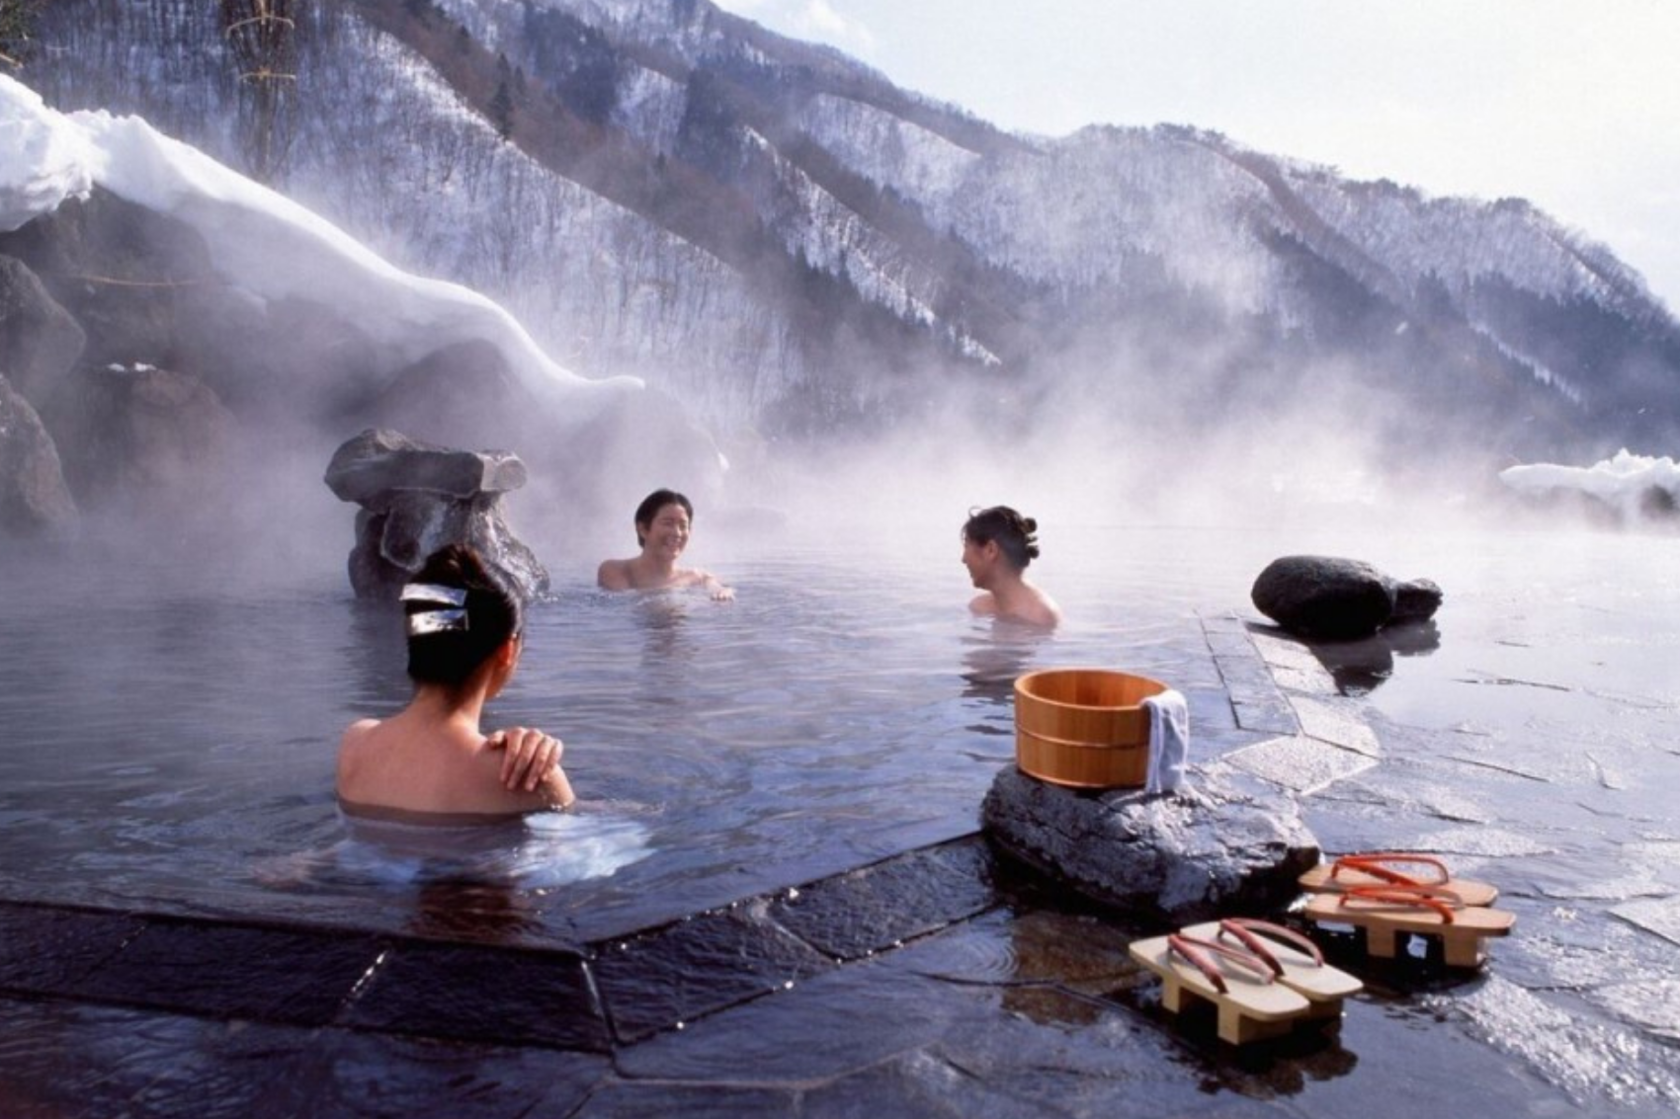 Япония купаться. Онсен Япония горячие источники. Японская баня онсэн. Геотермальные бани онсэн (Япония). Японский онсен в горах.